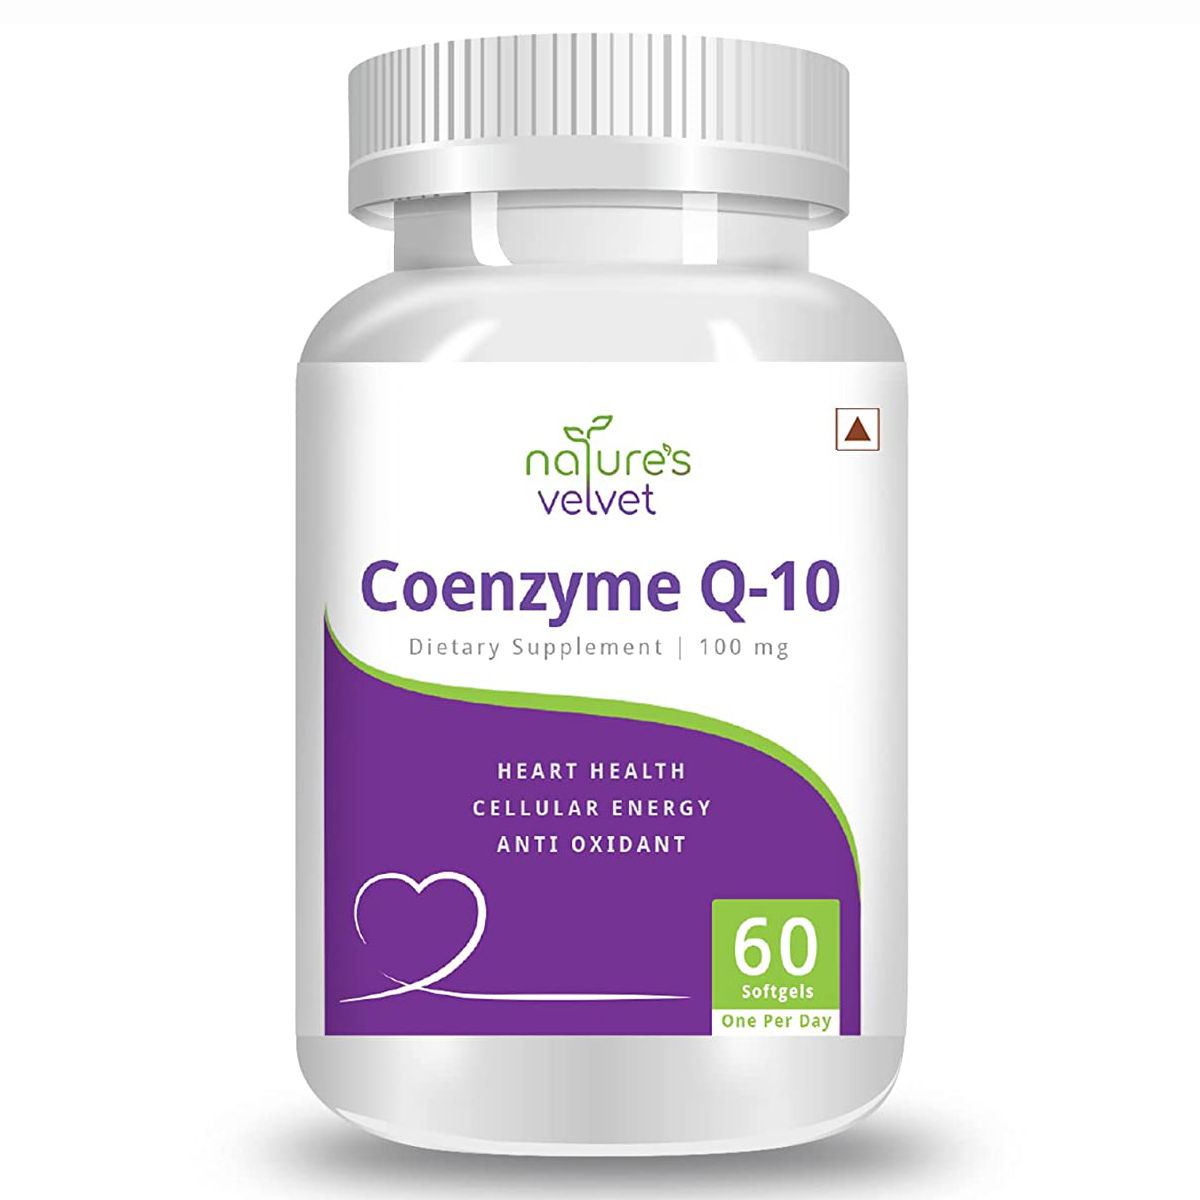 Nature's Velvet Coenzyme Q-10 100 mg, 60 Softgels, Pack of 1 